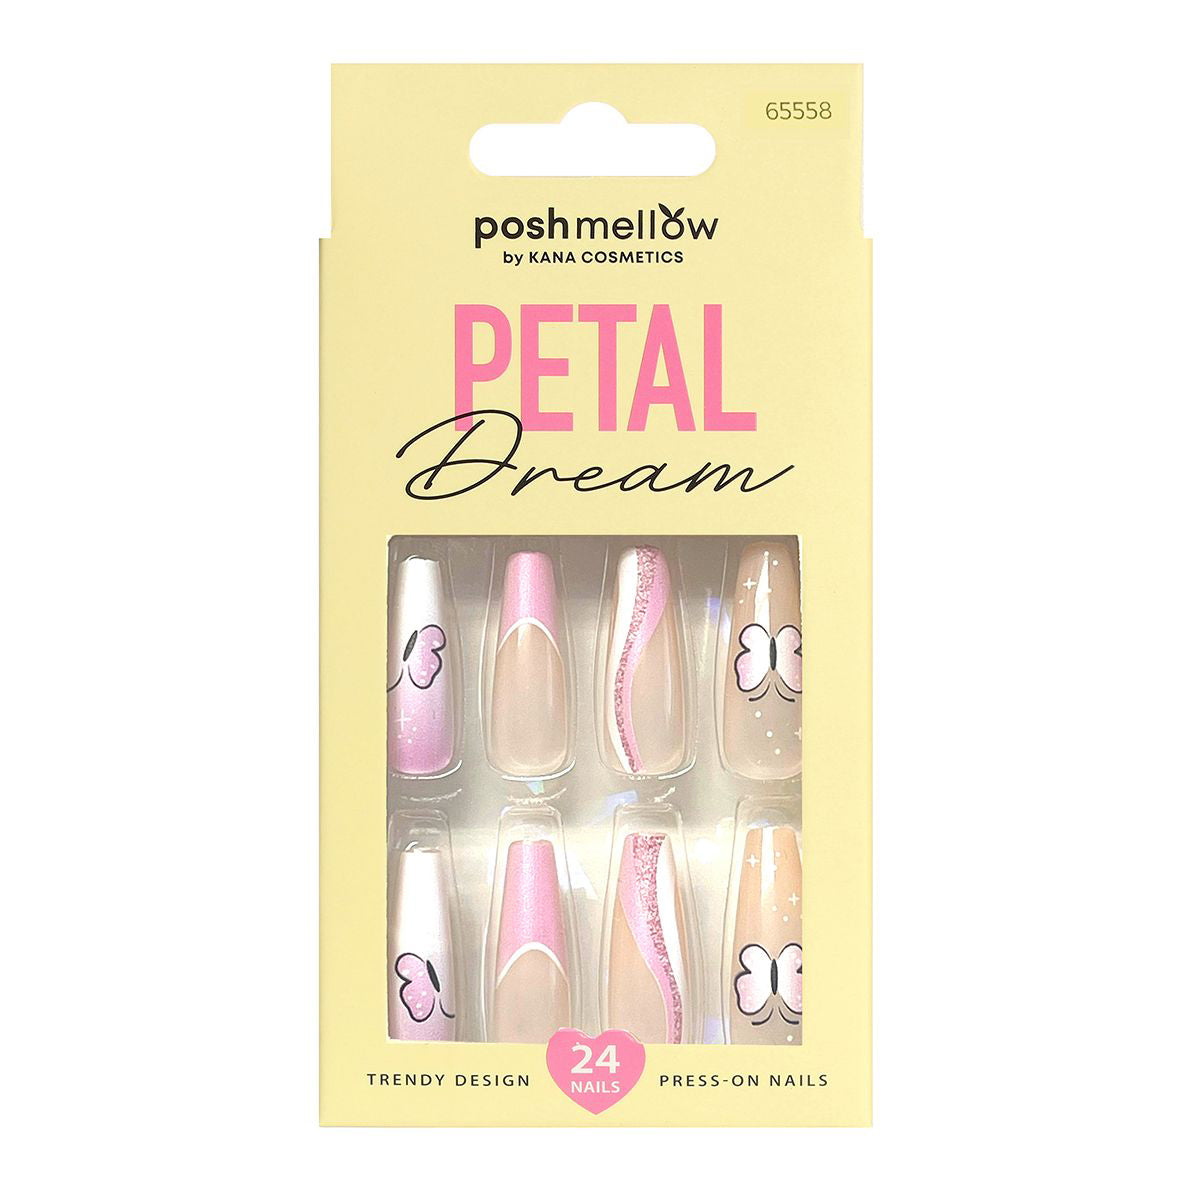 Petal Dream-Design-Nails-Press-on-Nails-